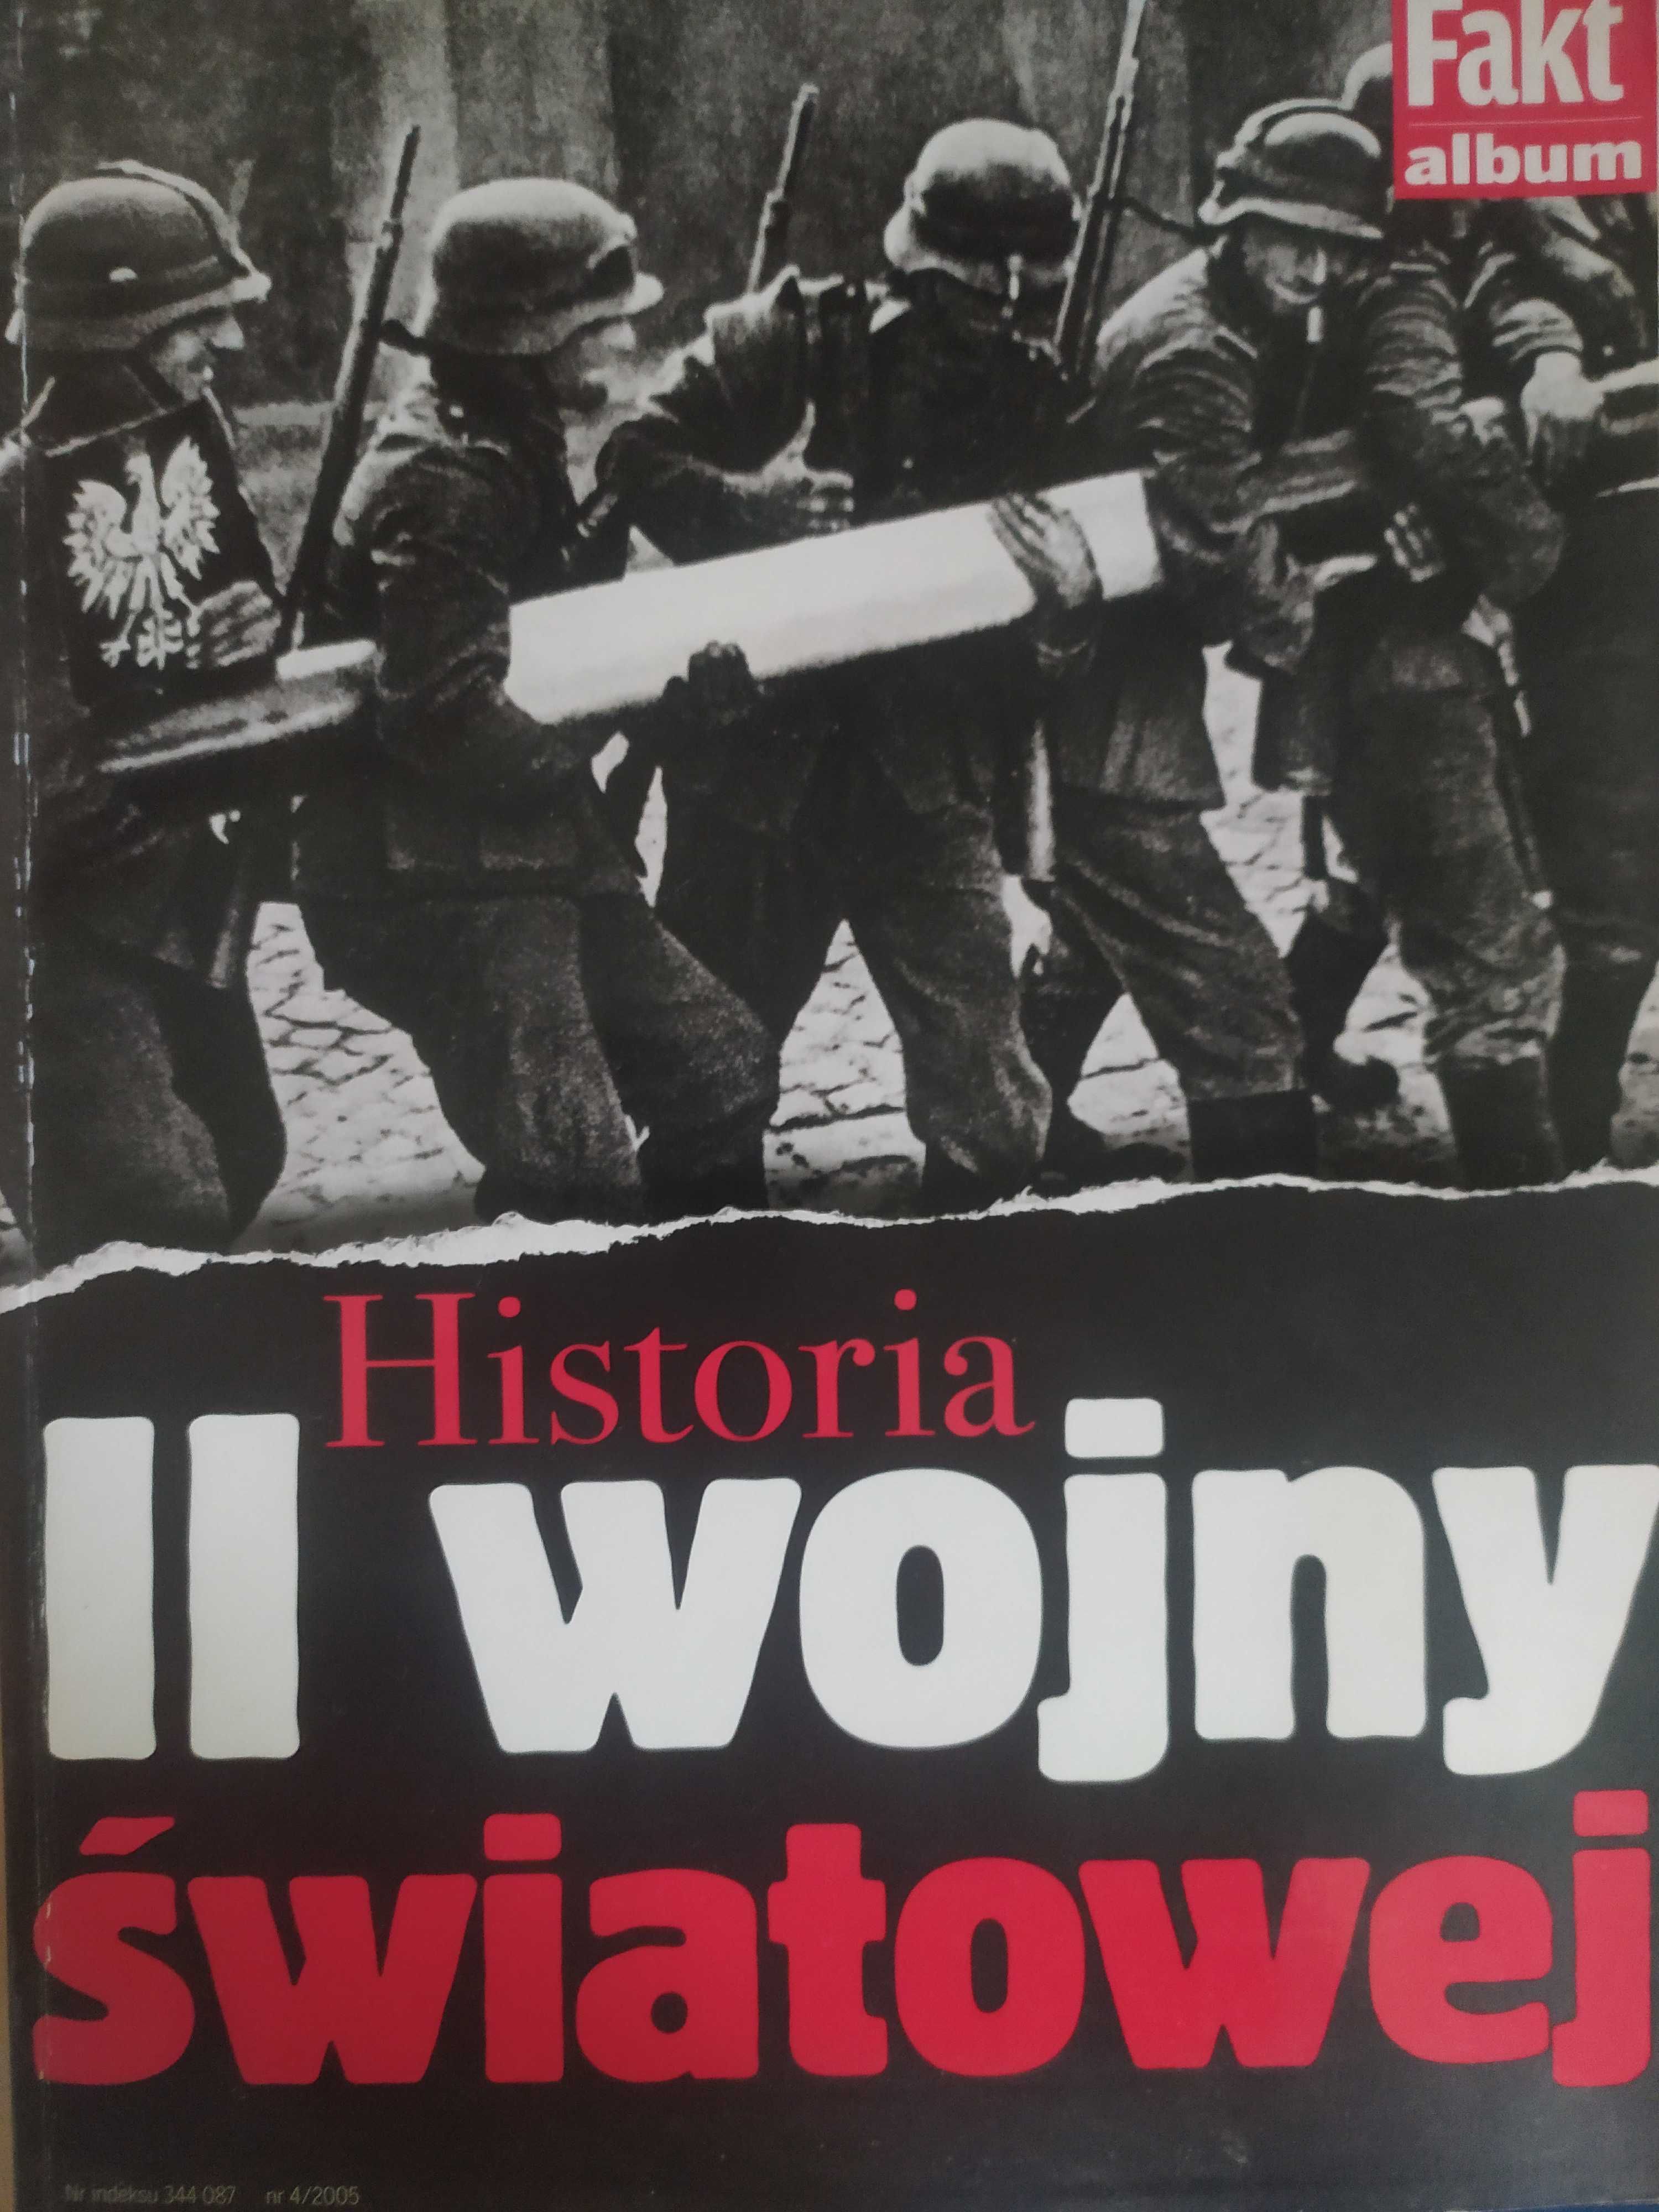 Książka "historia II wojny światowej